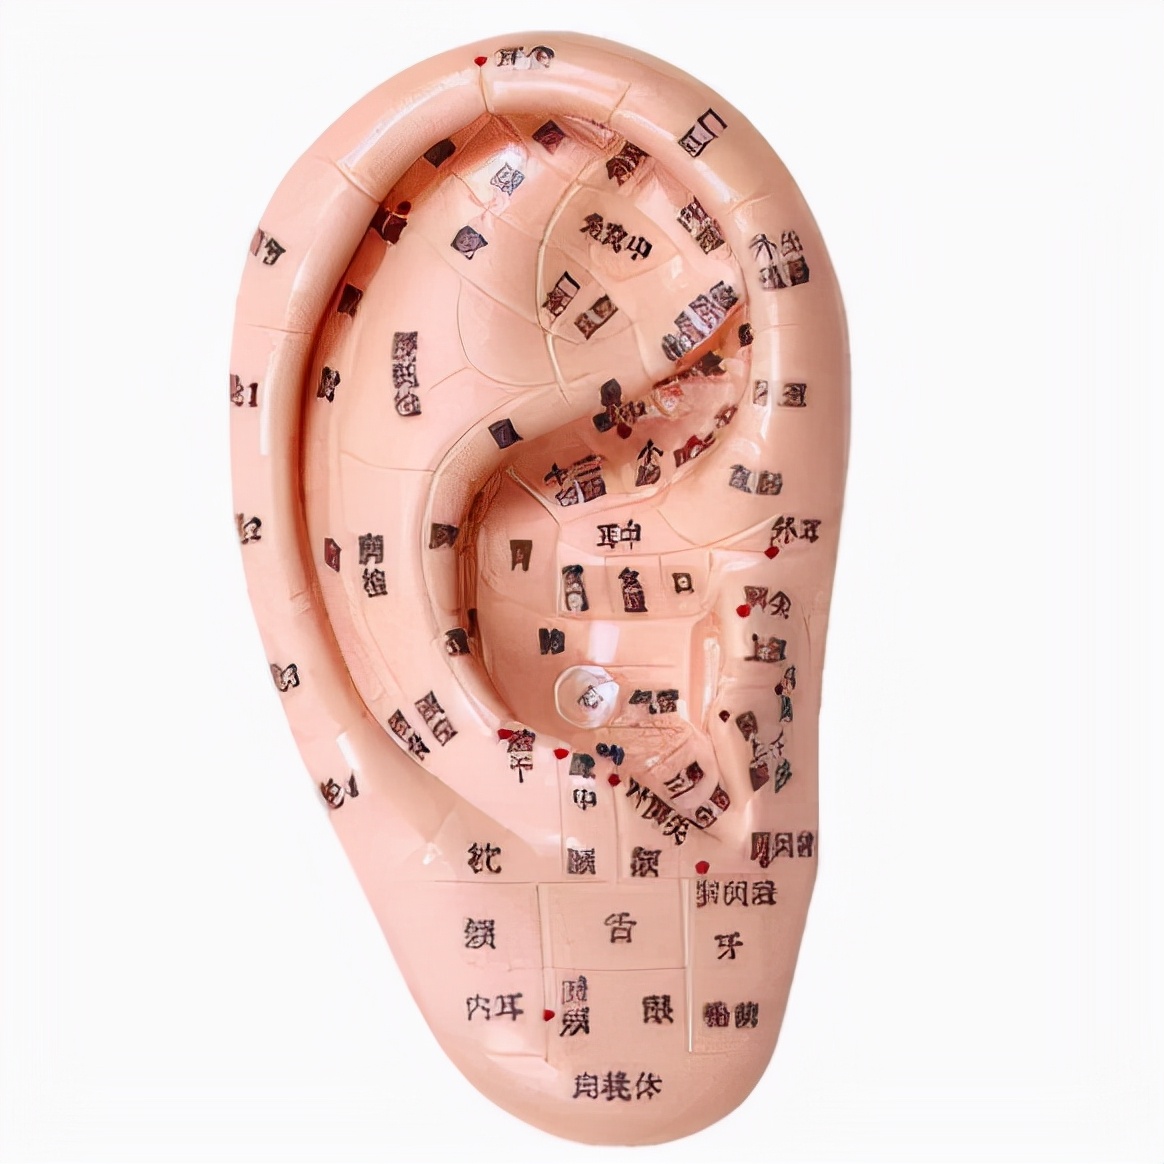 耳道:耳絡,耳朵的結構知識,如何避免噪音,_中文百科全書